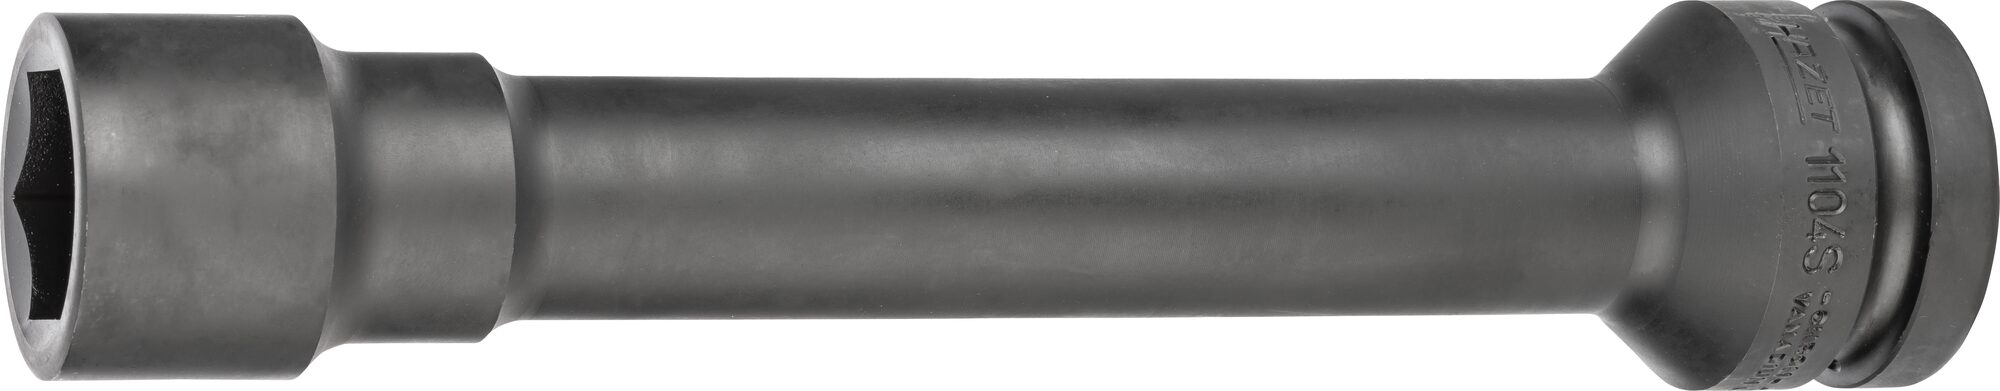 HAZET Schlag-, Maschinenschrauber Steckschlüsseleinsatz · Sechskant 1104S-32 · Vierkant hohl 25 mm (1 Zoll) · Außen Sechskant Profil · 32 mm